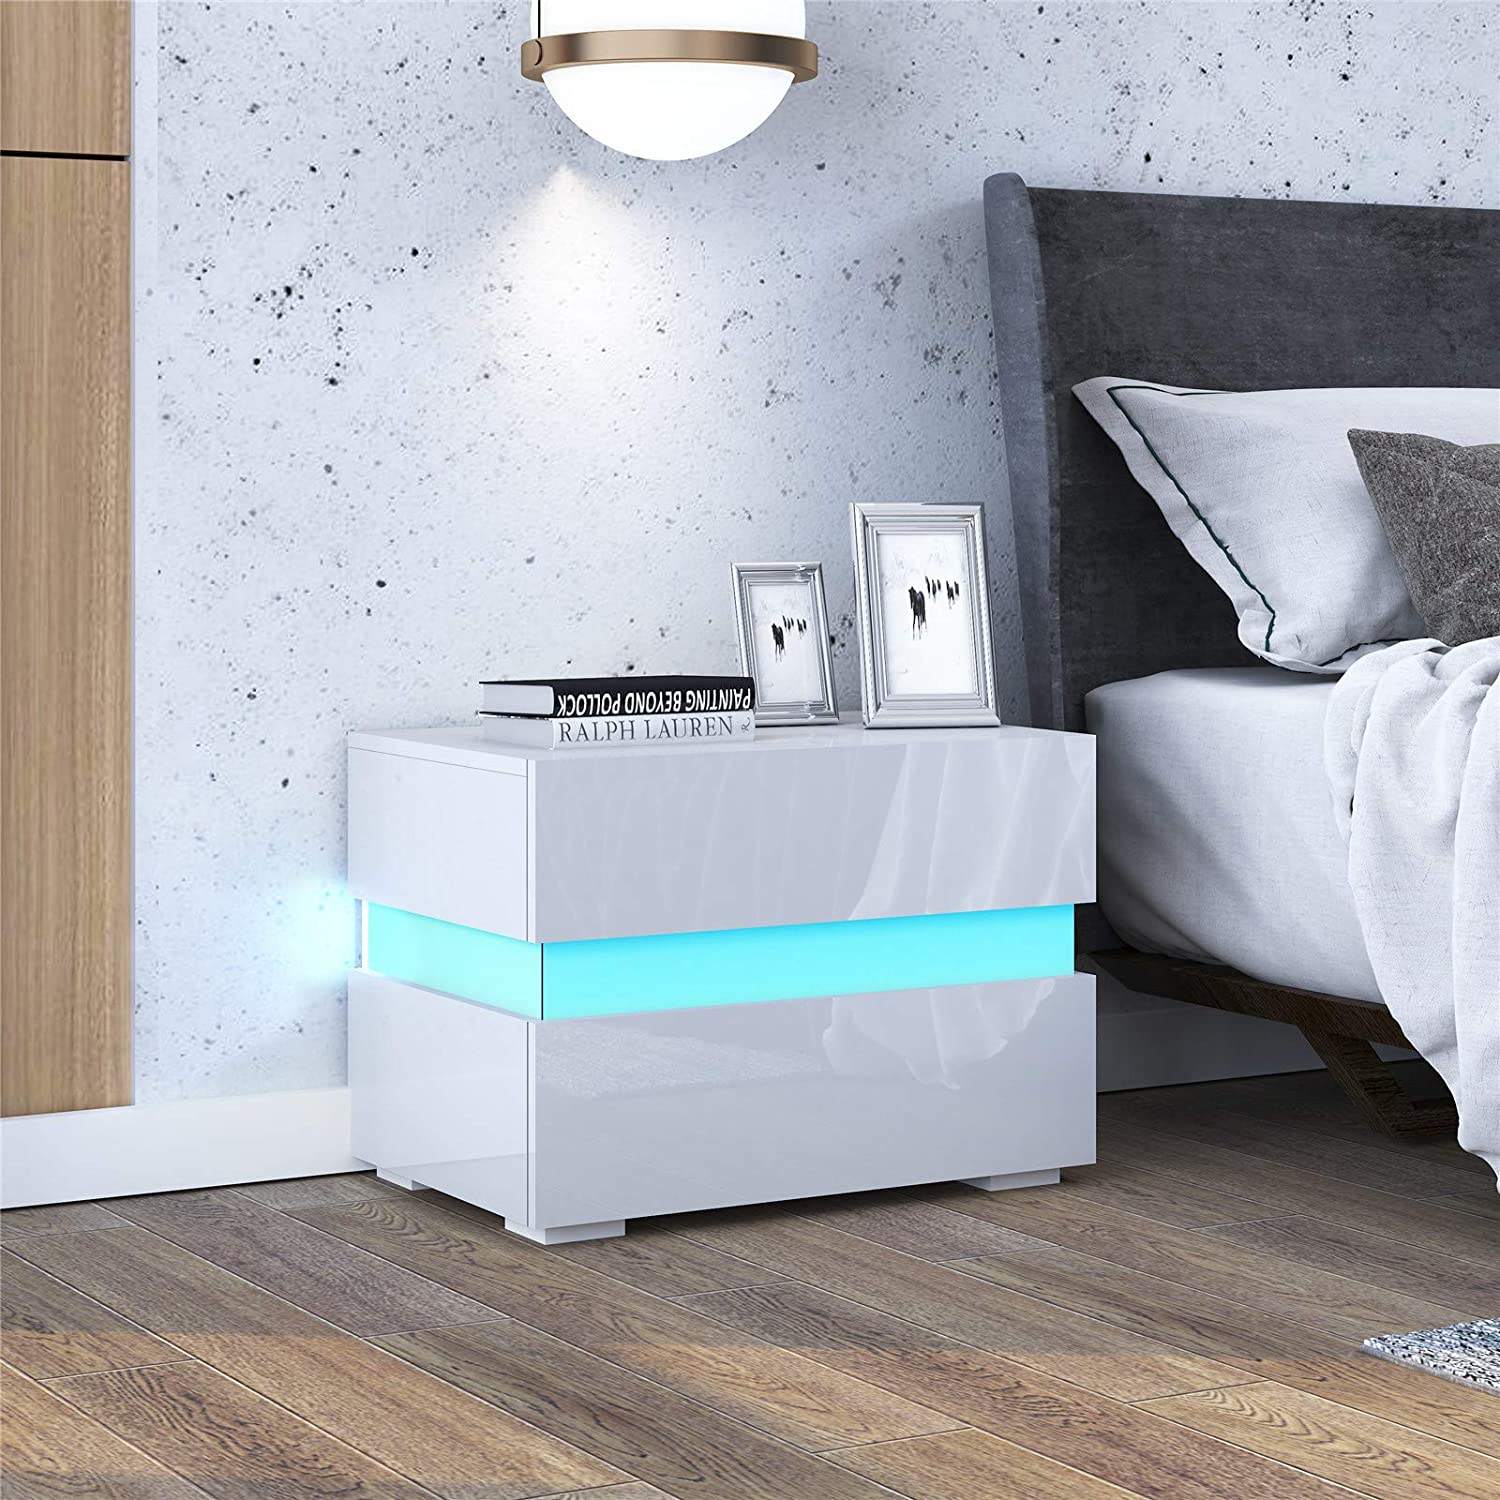 床头柜床头柜 2 抽屉白色床头柜高光 LED 灯现代卧室家具